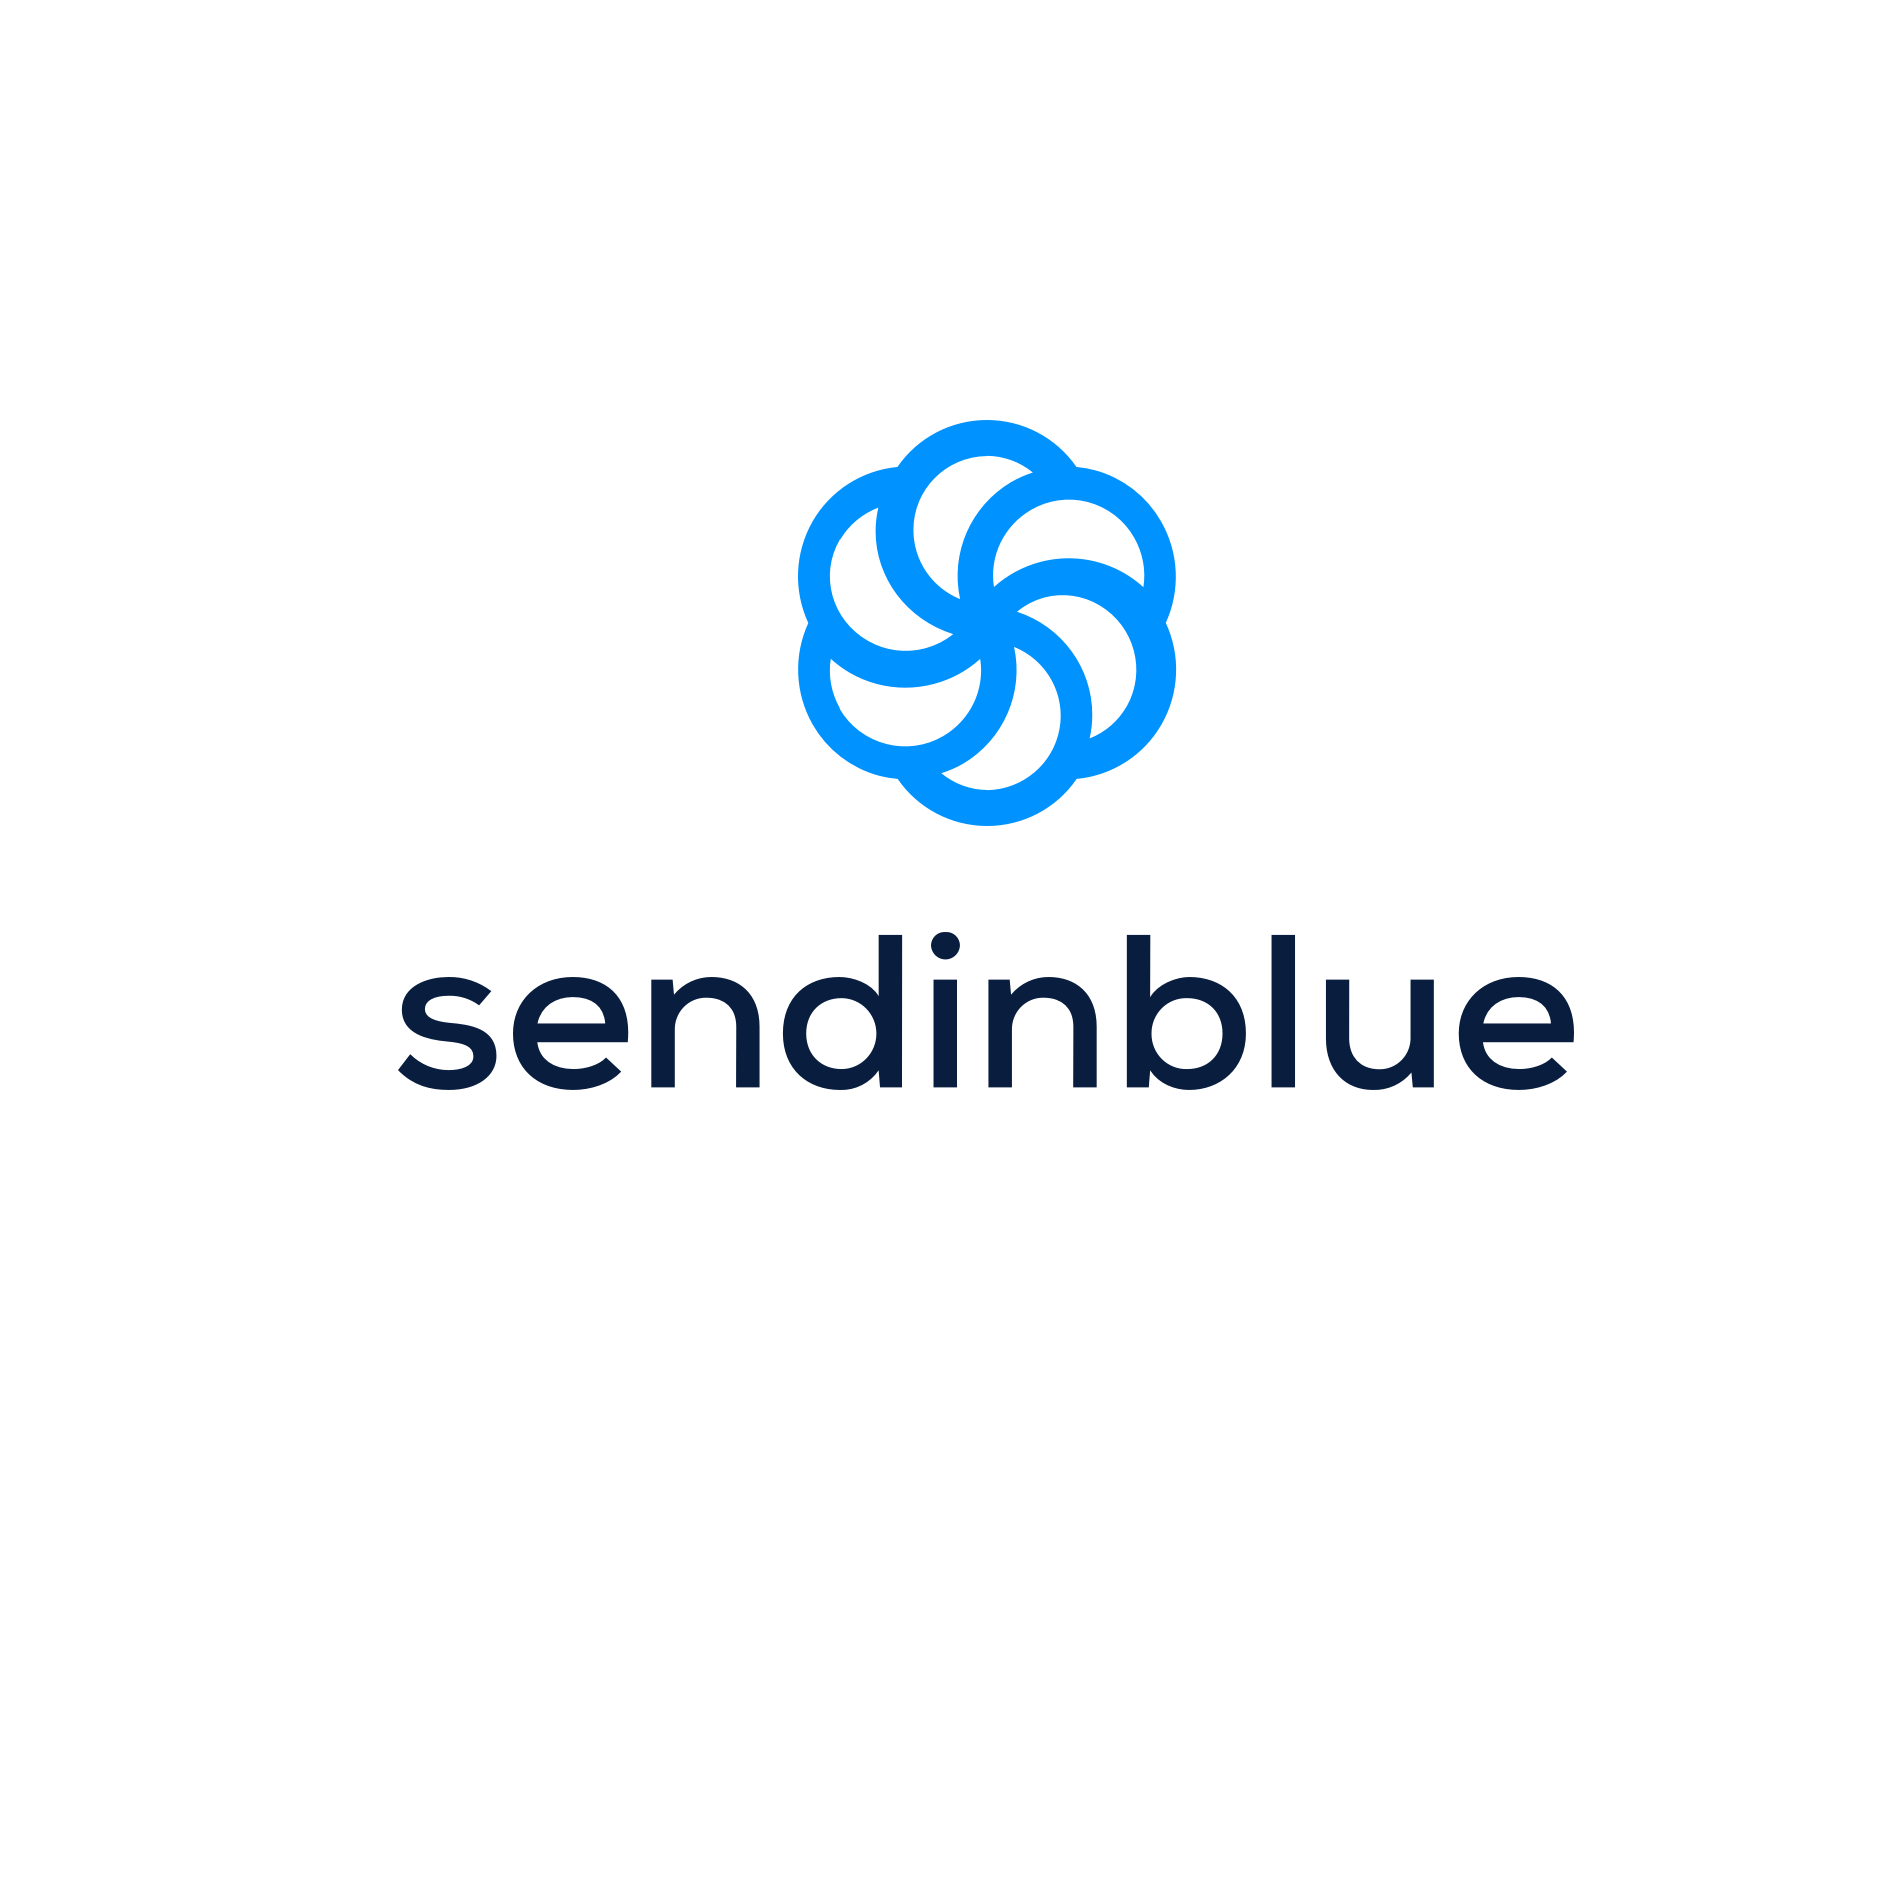 Sendinblue - Websamurai AG die innovative Webagentur in Aarau und Zürich 1